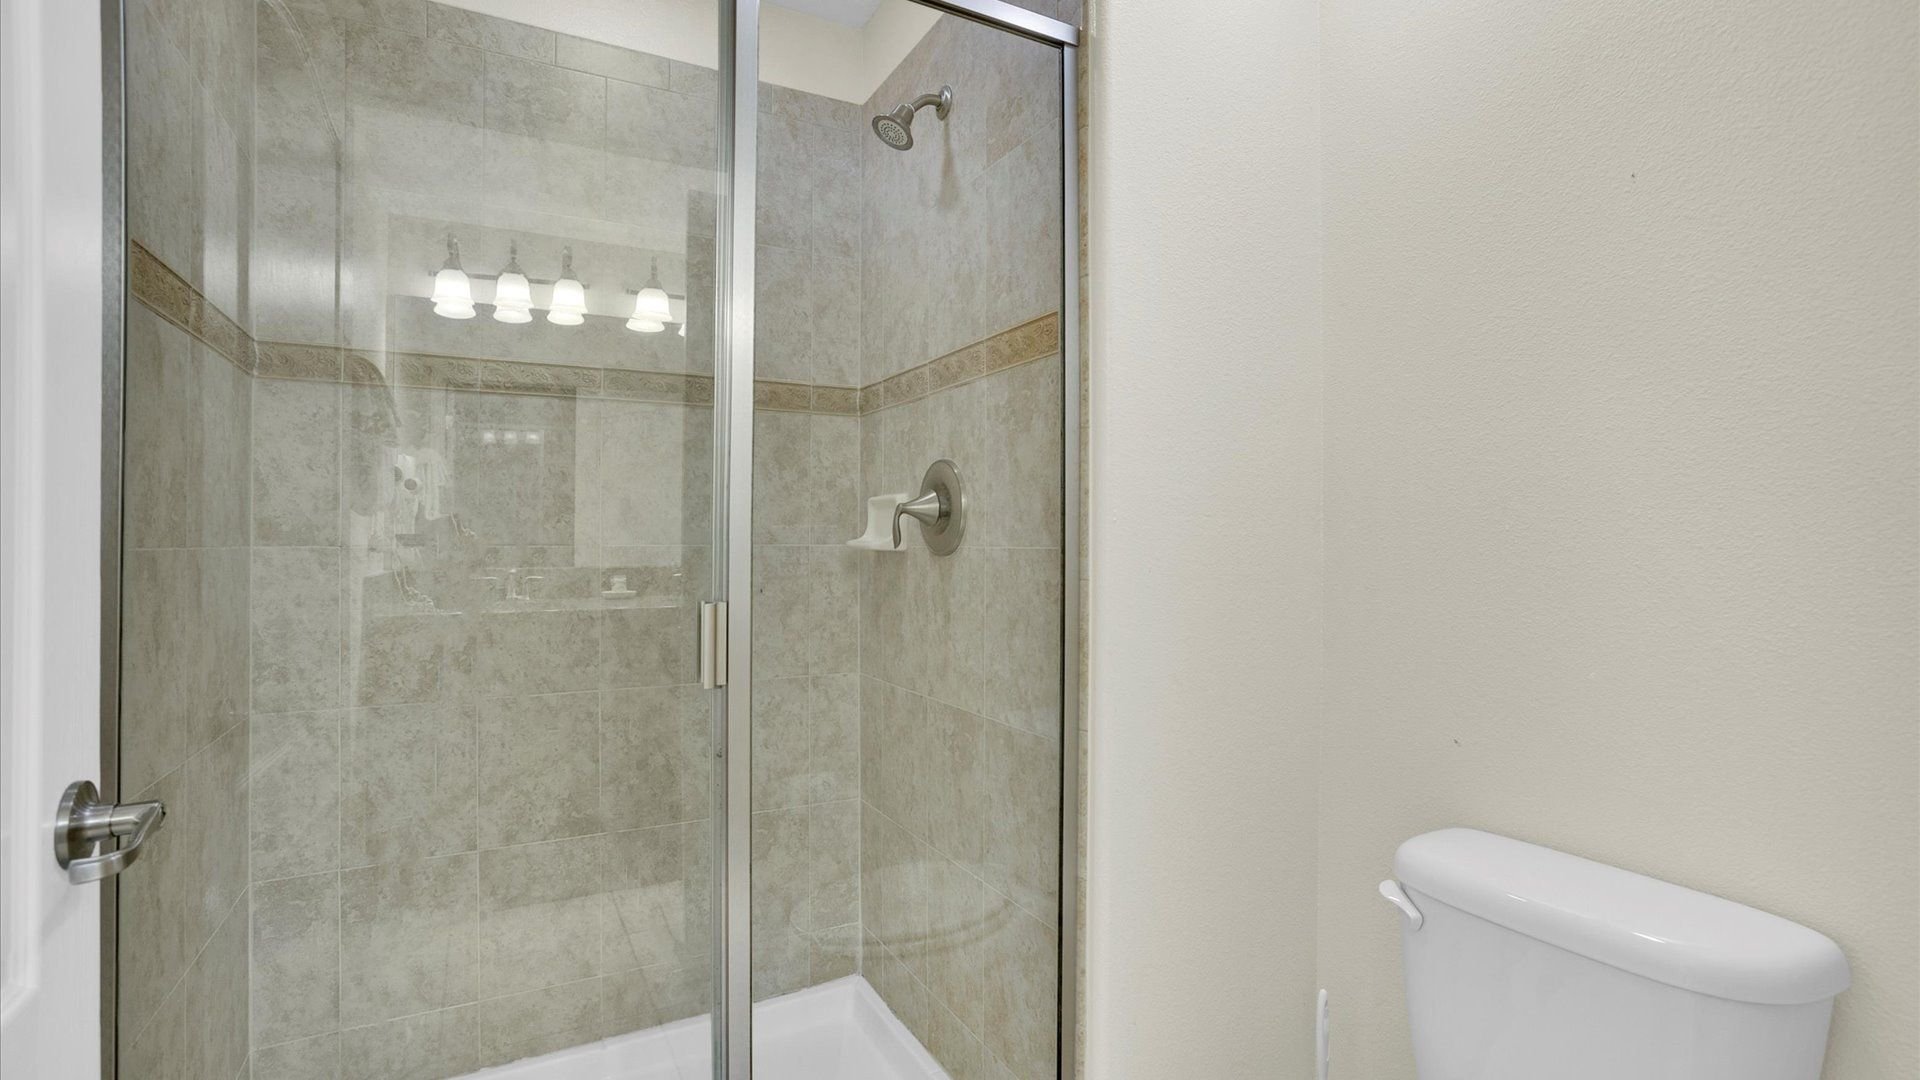 Hall Bathroom 2 (Angle)
Shower